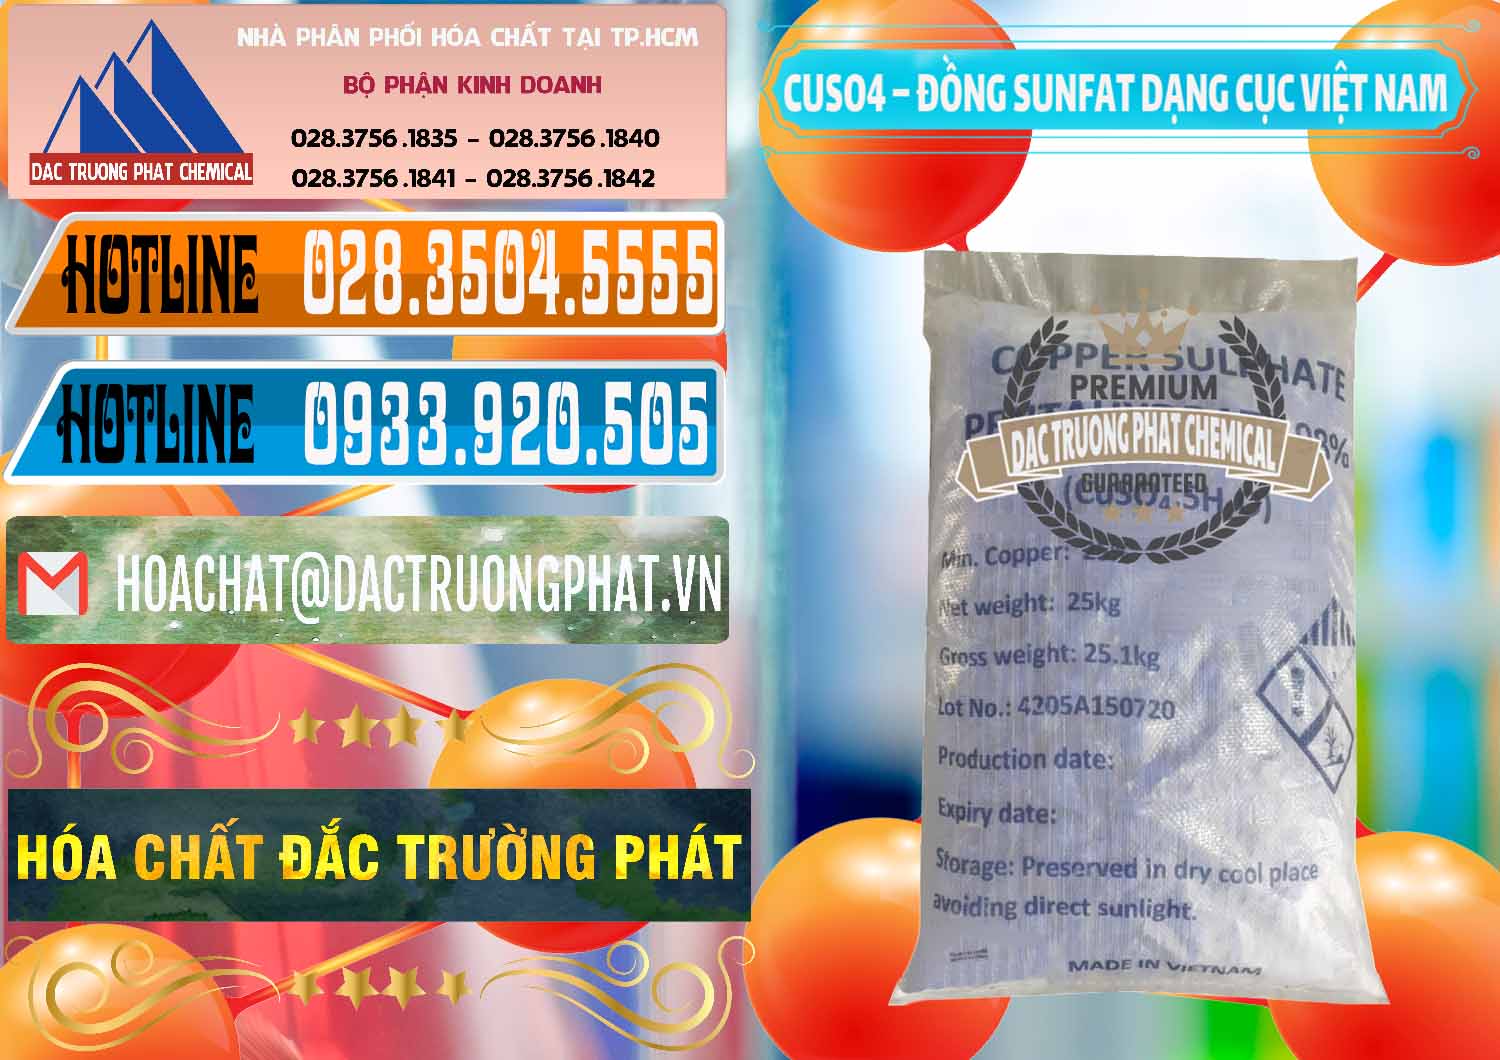 Phân phối ( cung ứng ) CUSO4 – Đồng Sunfat Dạng Cục Việt Nam - 0303 - Đơn vị chuyên cung cấp & bán hóa chất tại TP.HCM - stmp.net